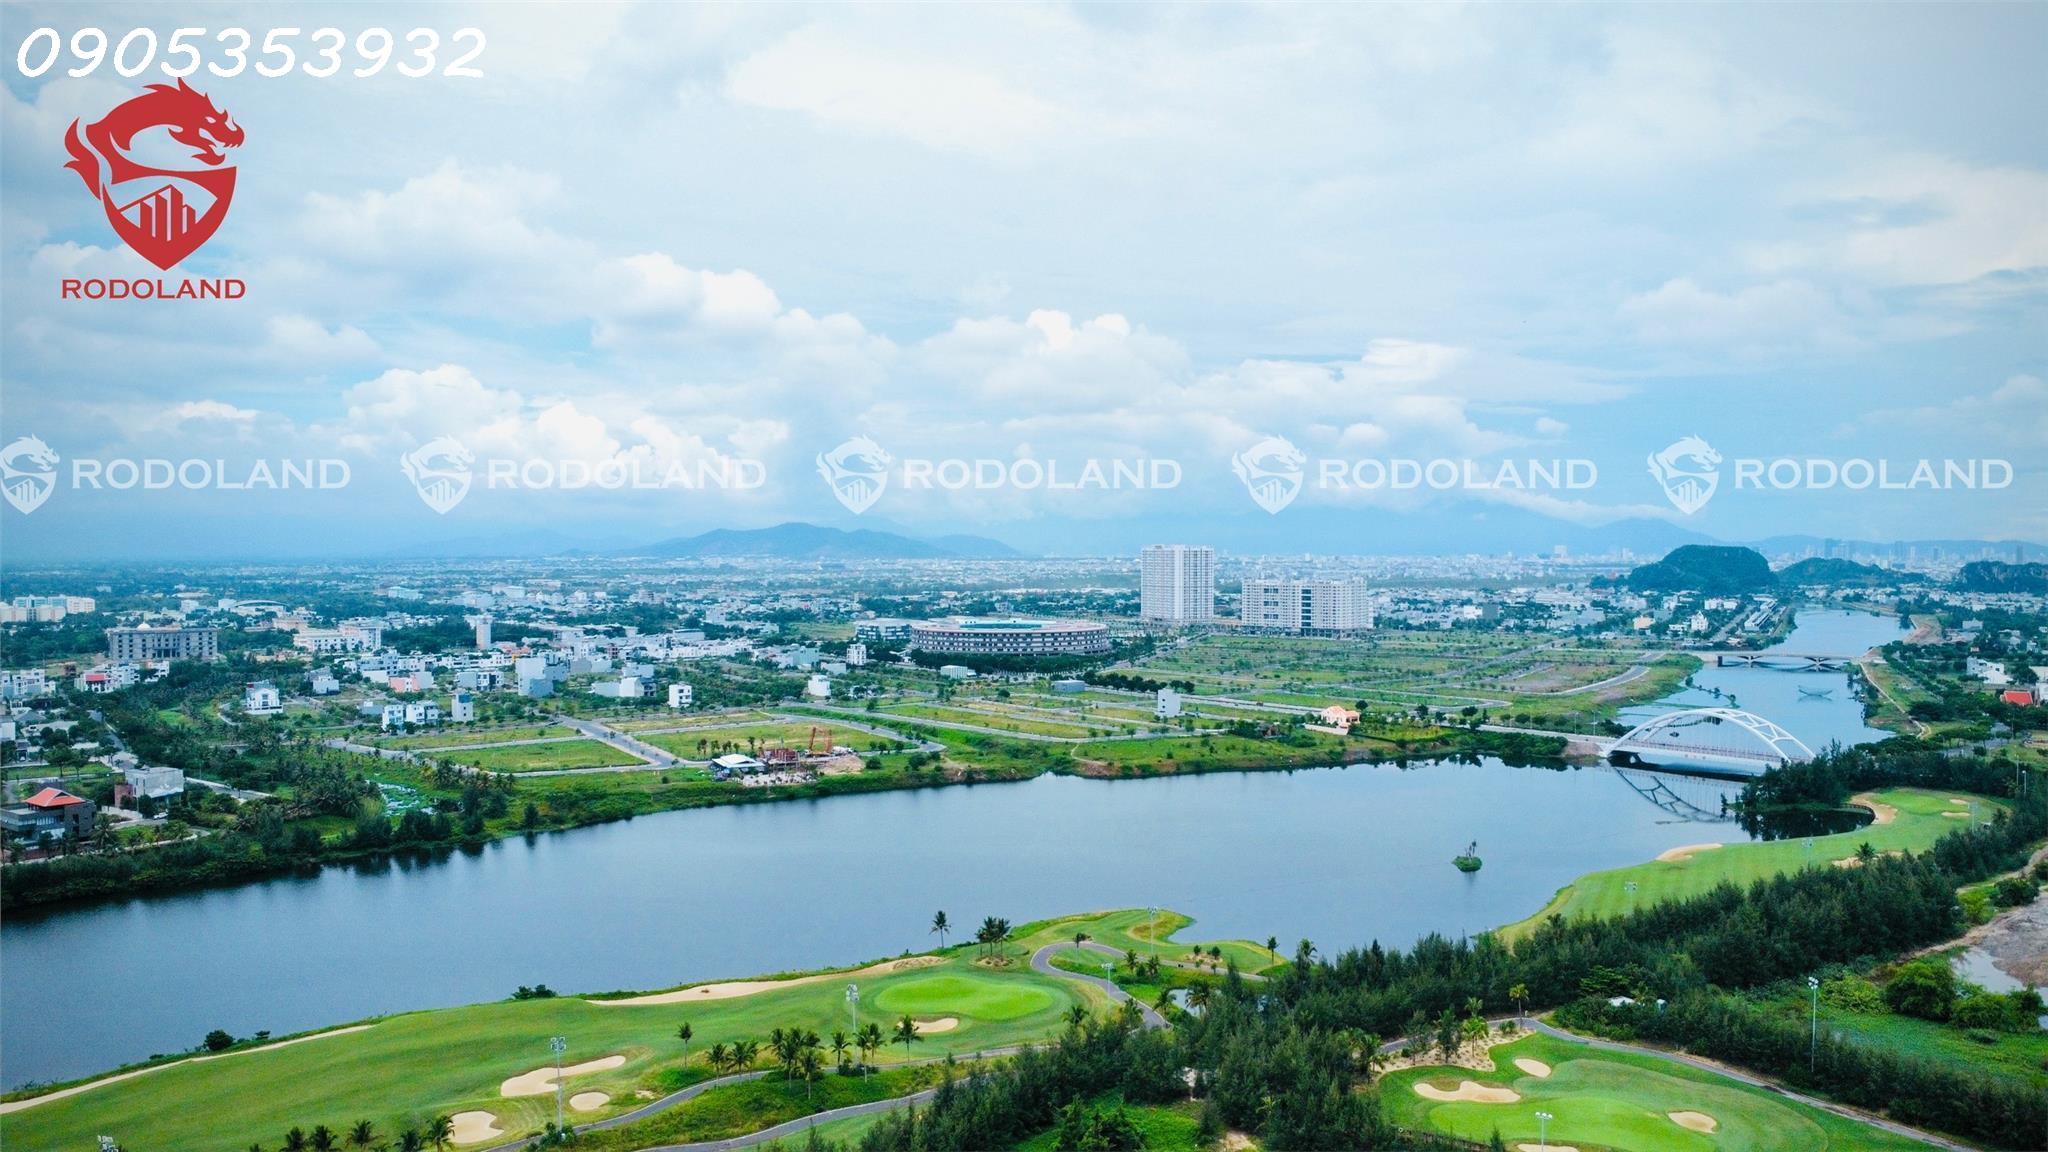 RẺ NHẤT: Bán đất biệt thự FPT Đà Nẵng 216m2 (9mx24m), gần kênh giá rất tốt. Liên hệ: 0905.31.89.88 2